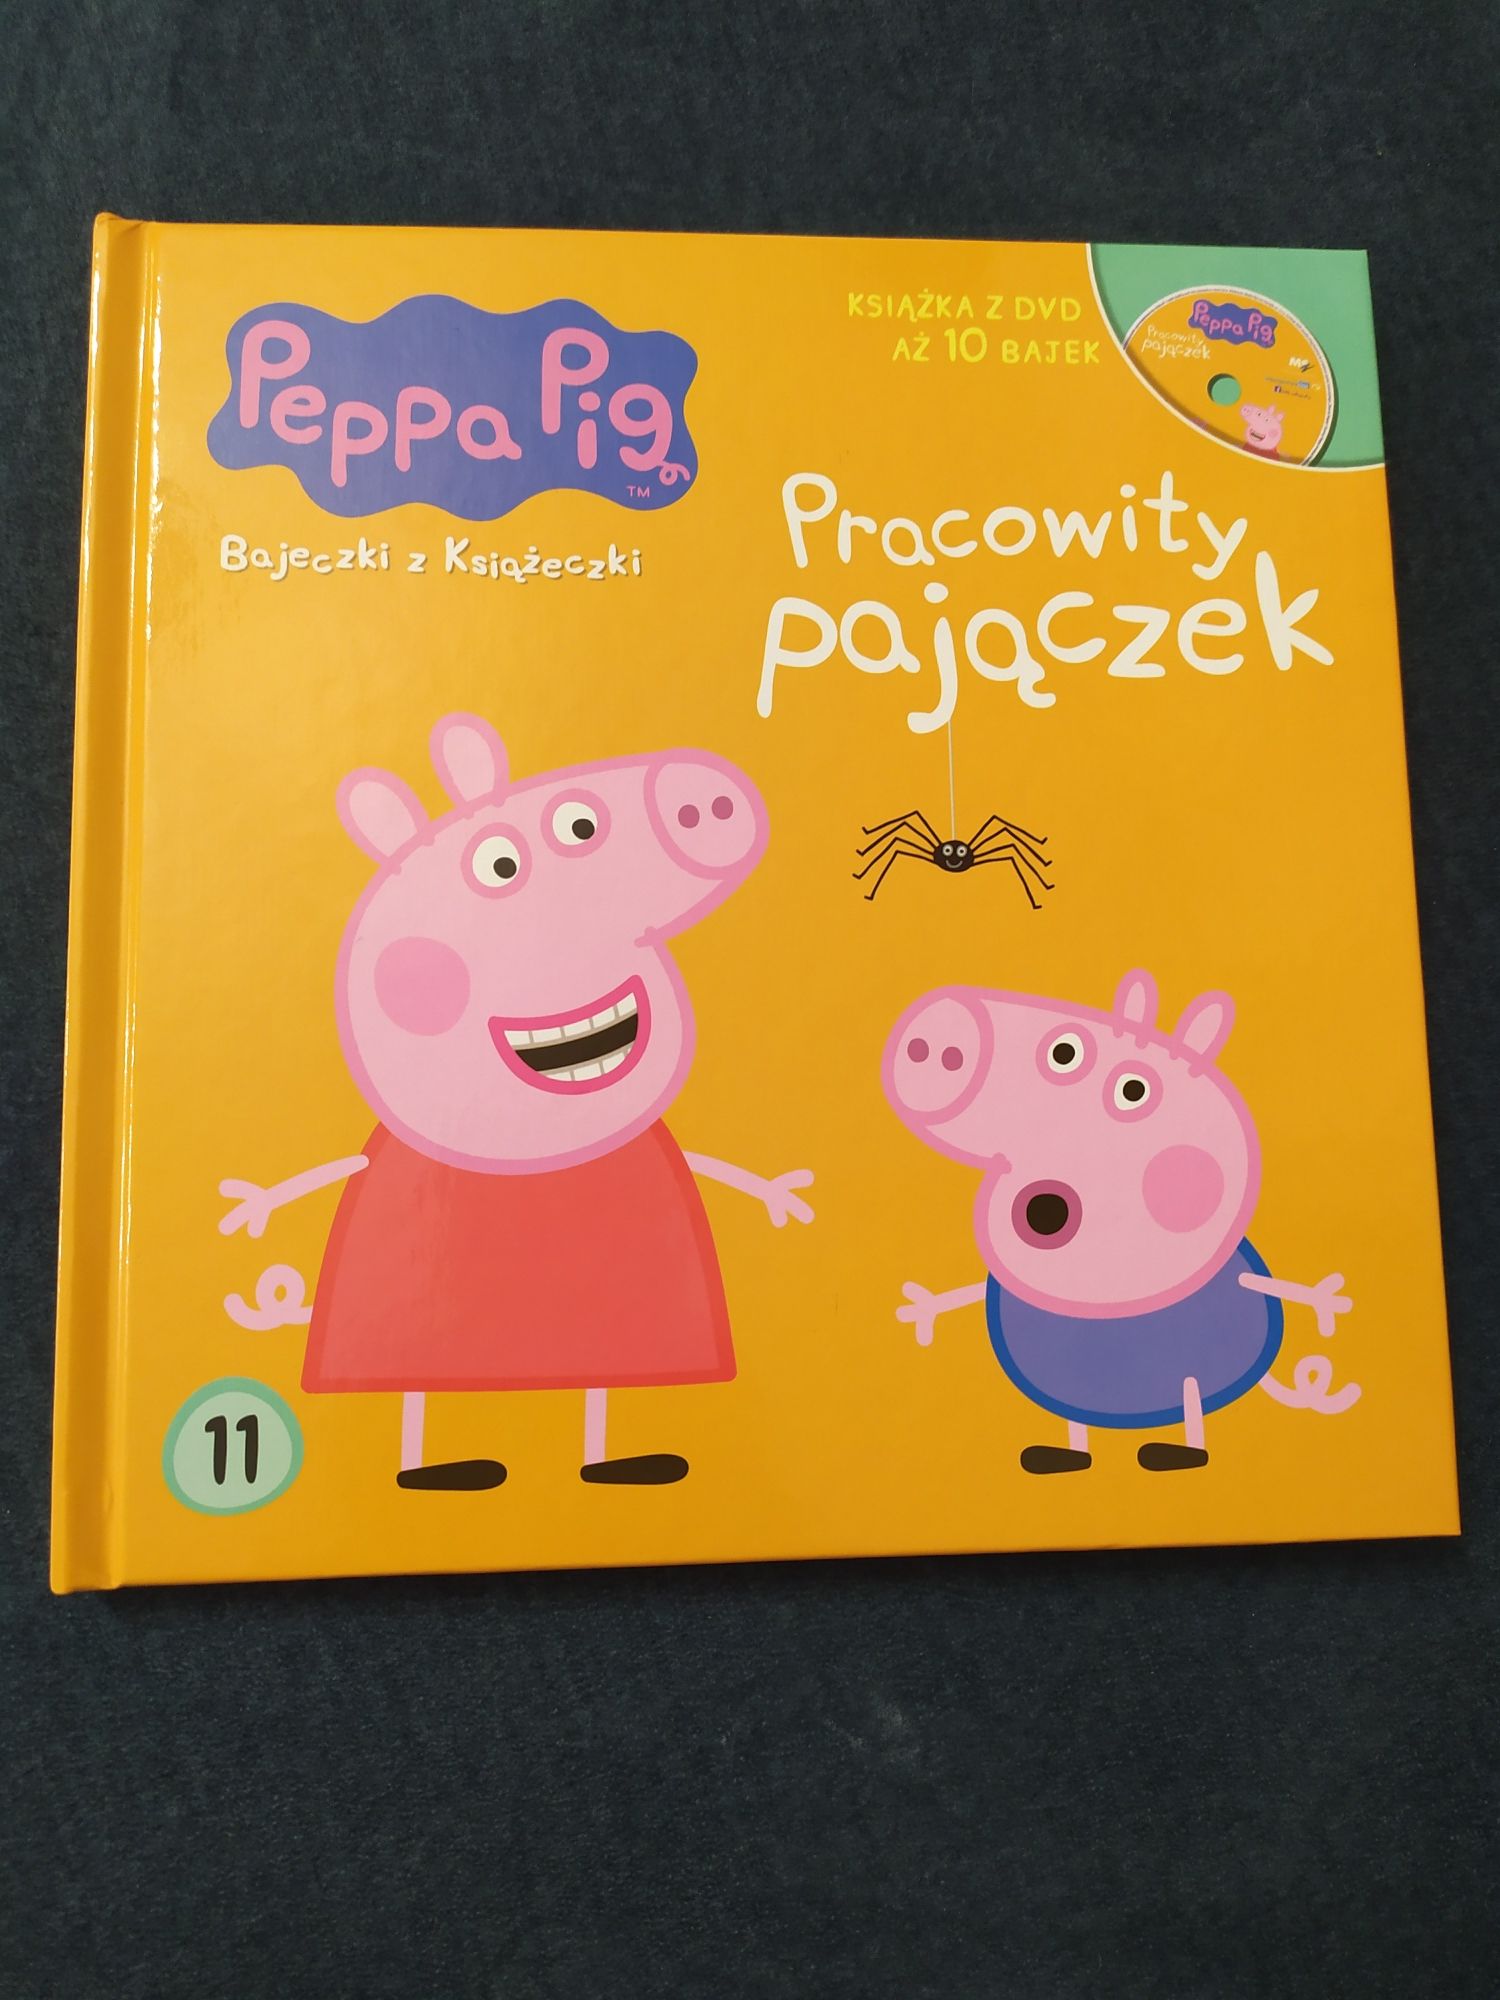 Książeczka Peppa Pig z płytą